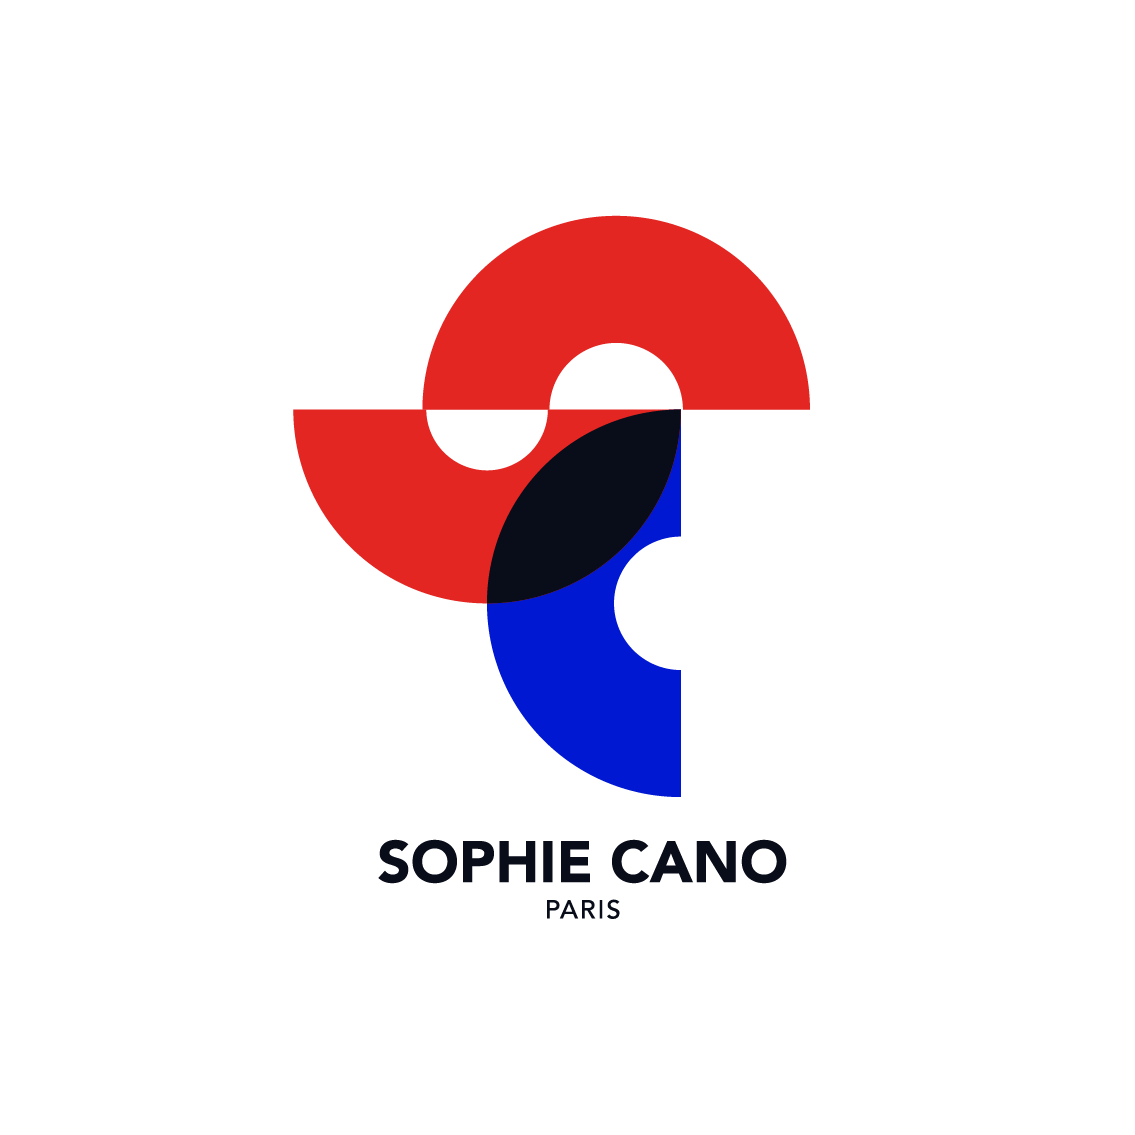 Sophie Cano Paris– sophiecanoparis.com